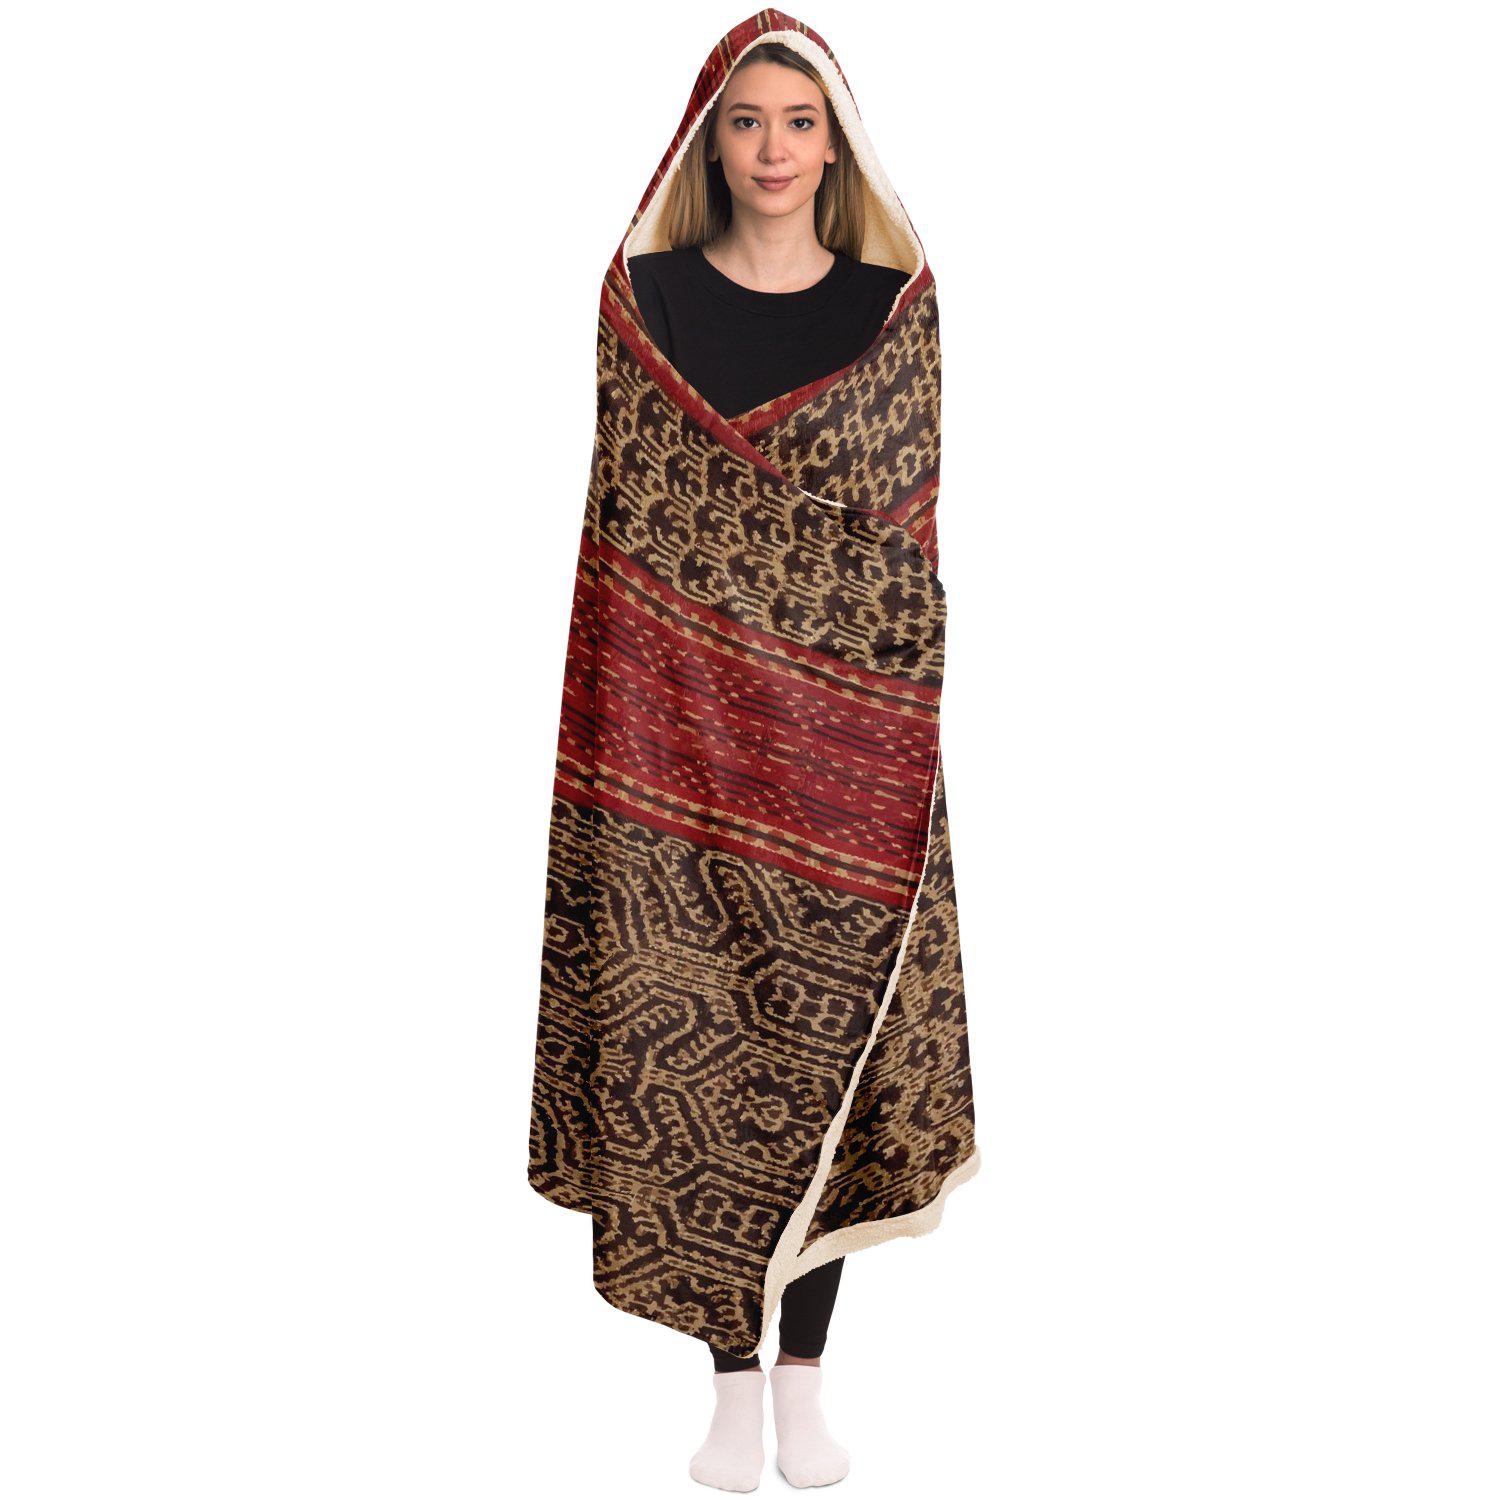 Hooded Blanket - AOP Hooded Blanket, Dayak Culture Ikat Design (Borneo)